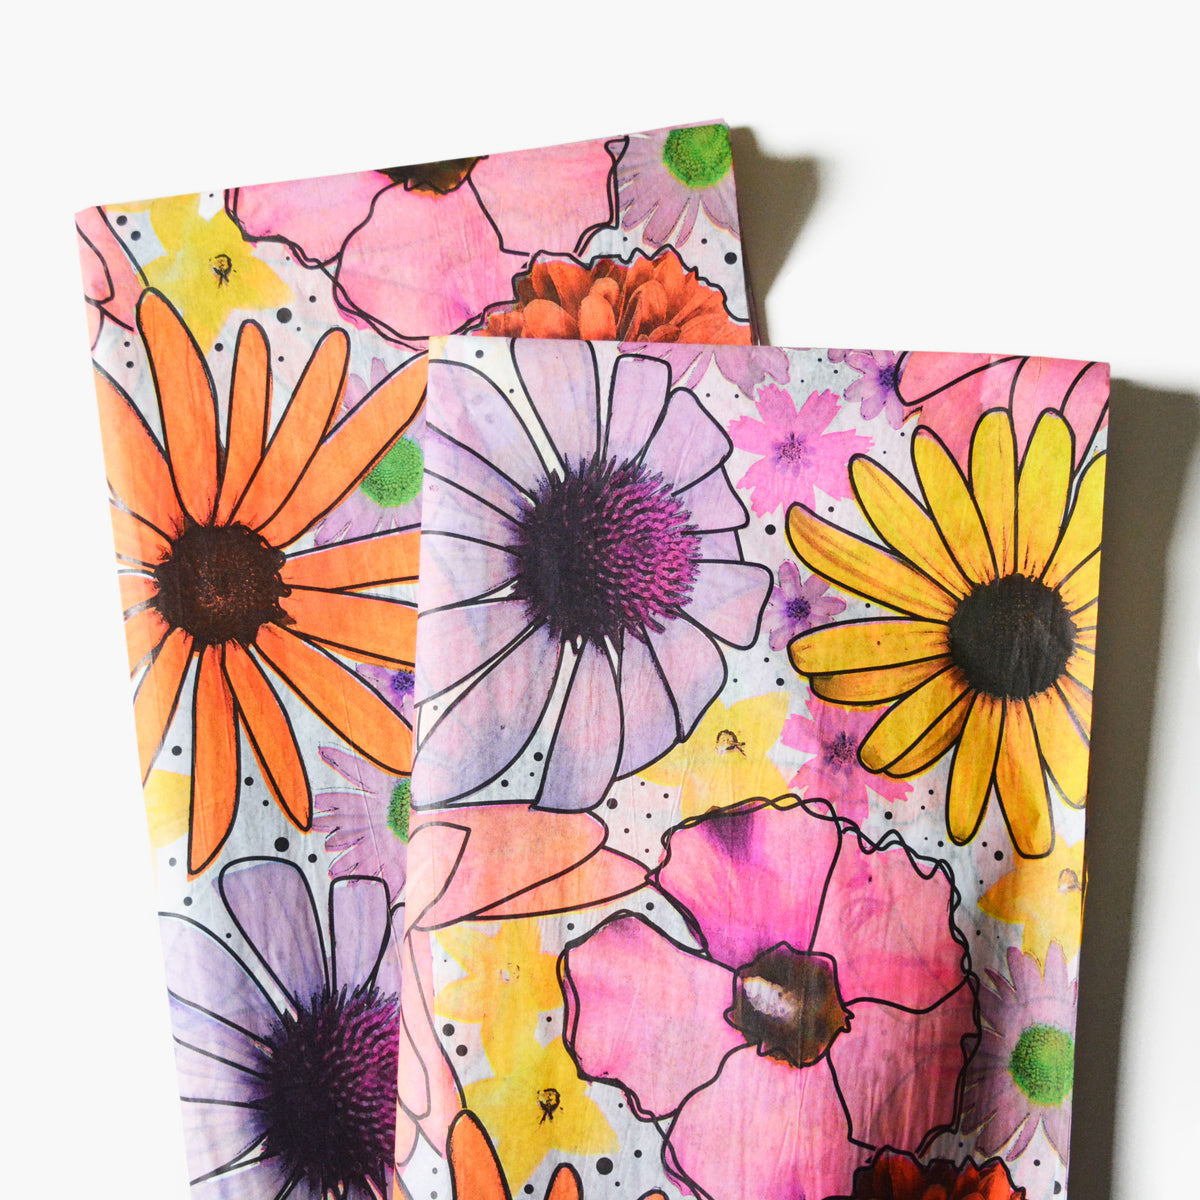 Watercolor Floral Tissue - WrapSmart